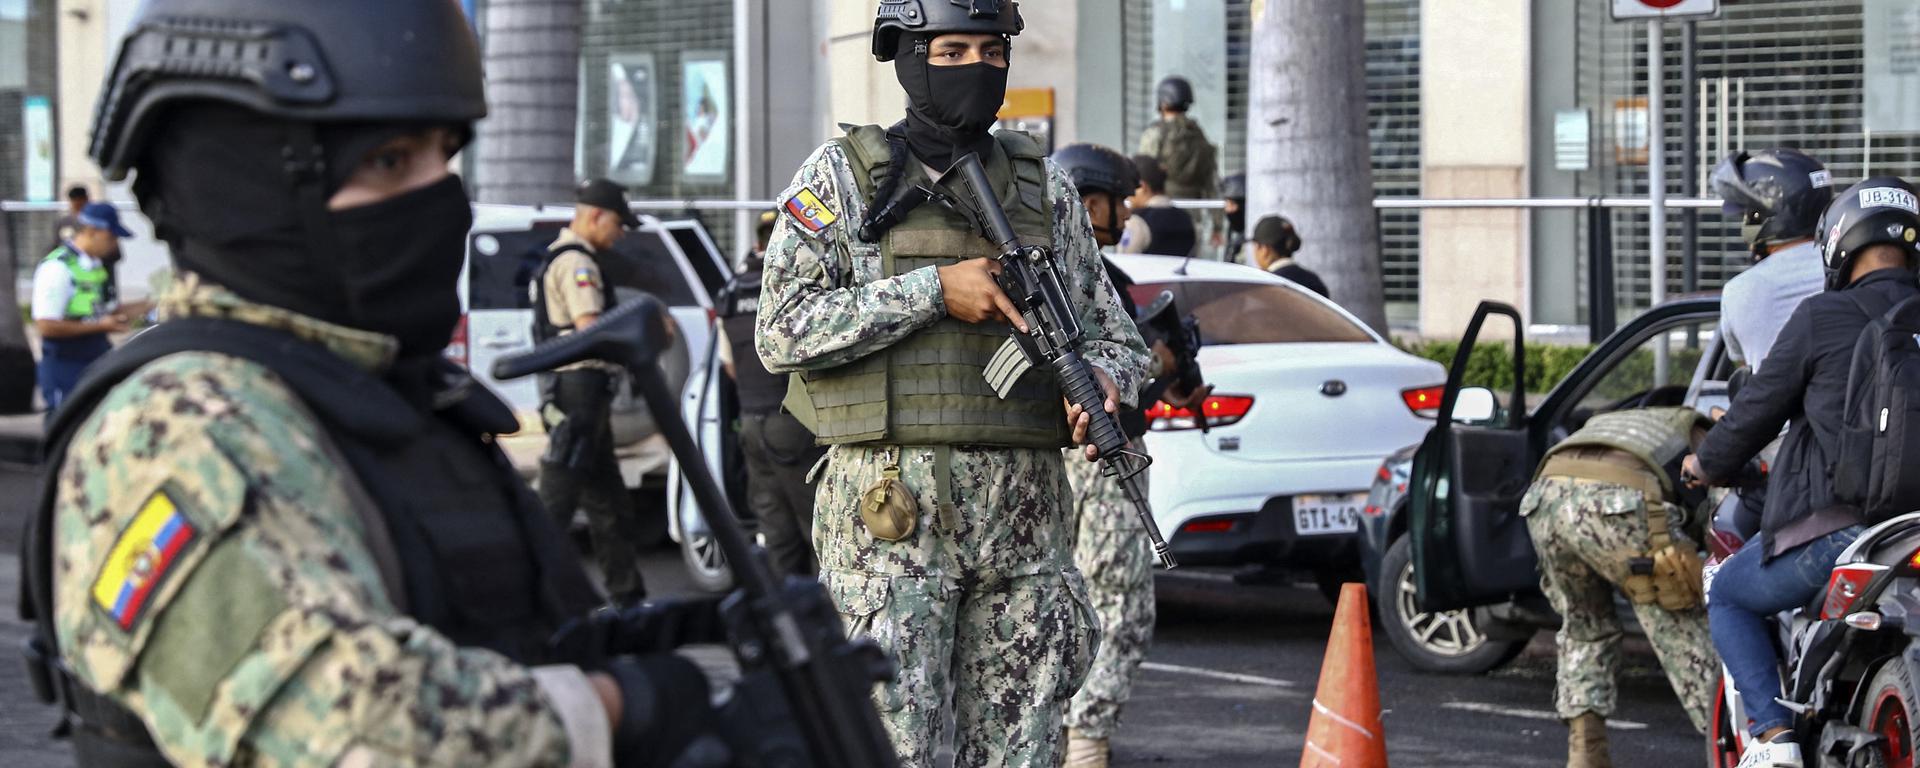 La polémica en Ecuador por el porte de armas de uso civil: ¿servirá para frenar la delincuencia?